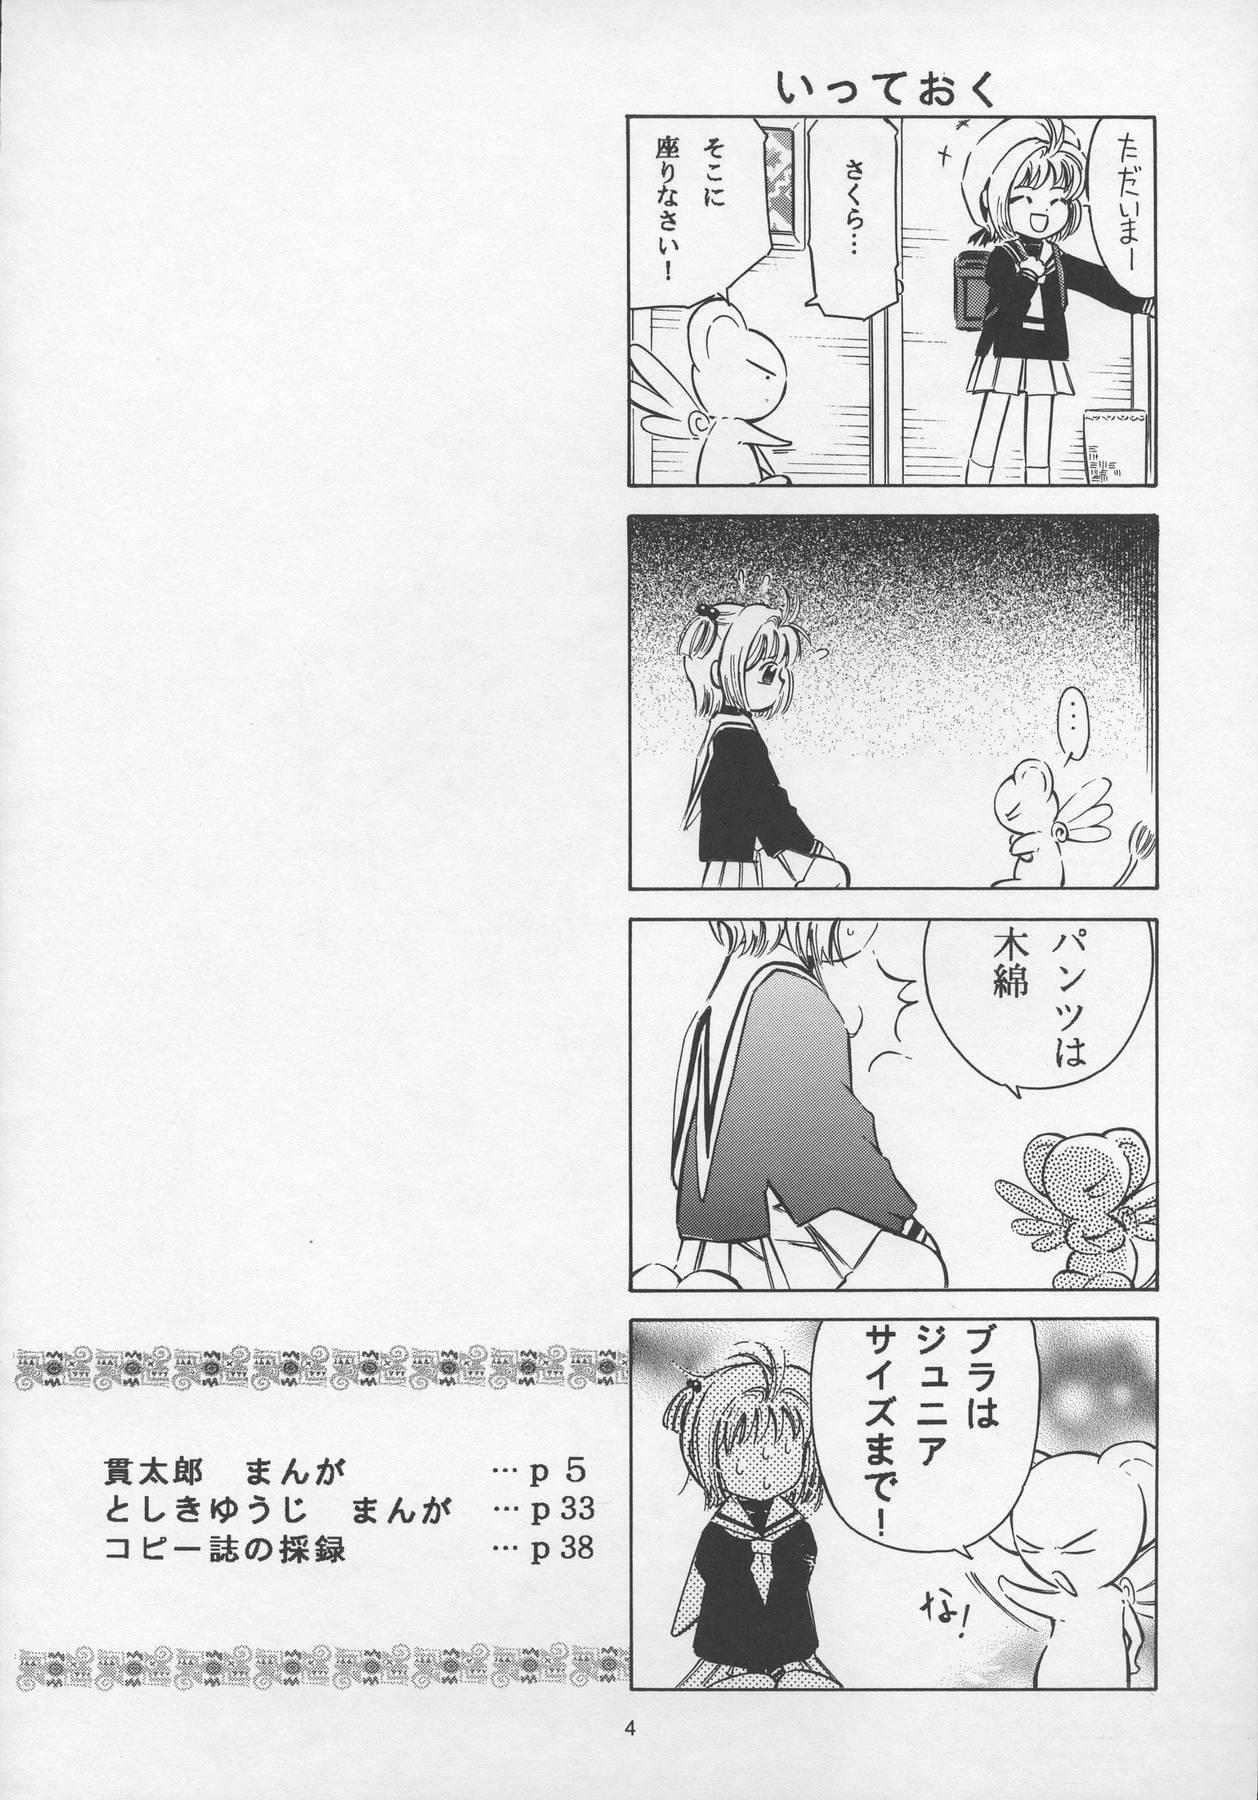 Caliente Sakura Drop 3 Lemon - Cardcaptor sakura Passionate - Page 4